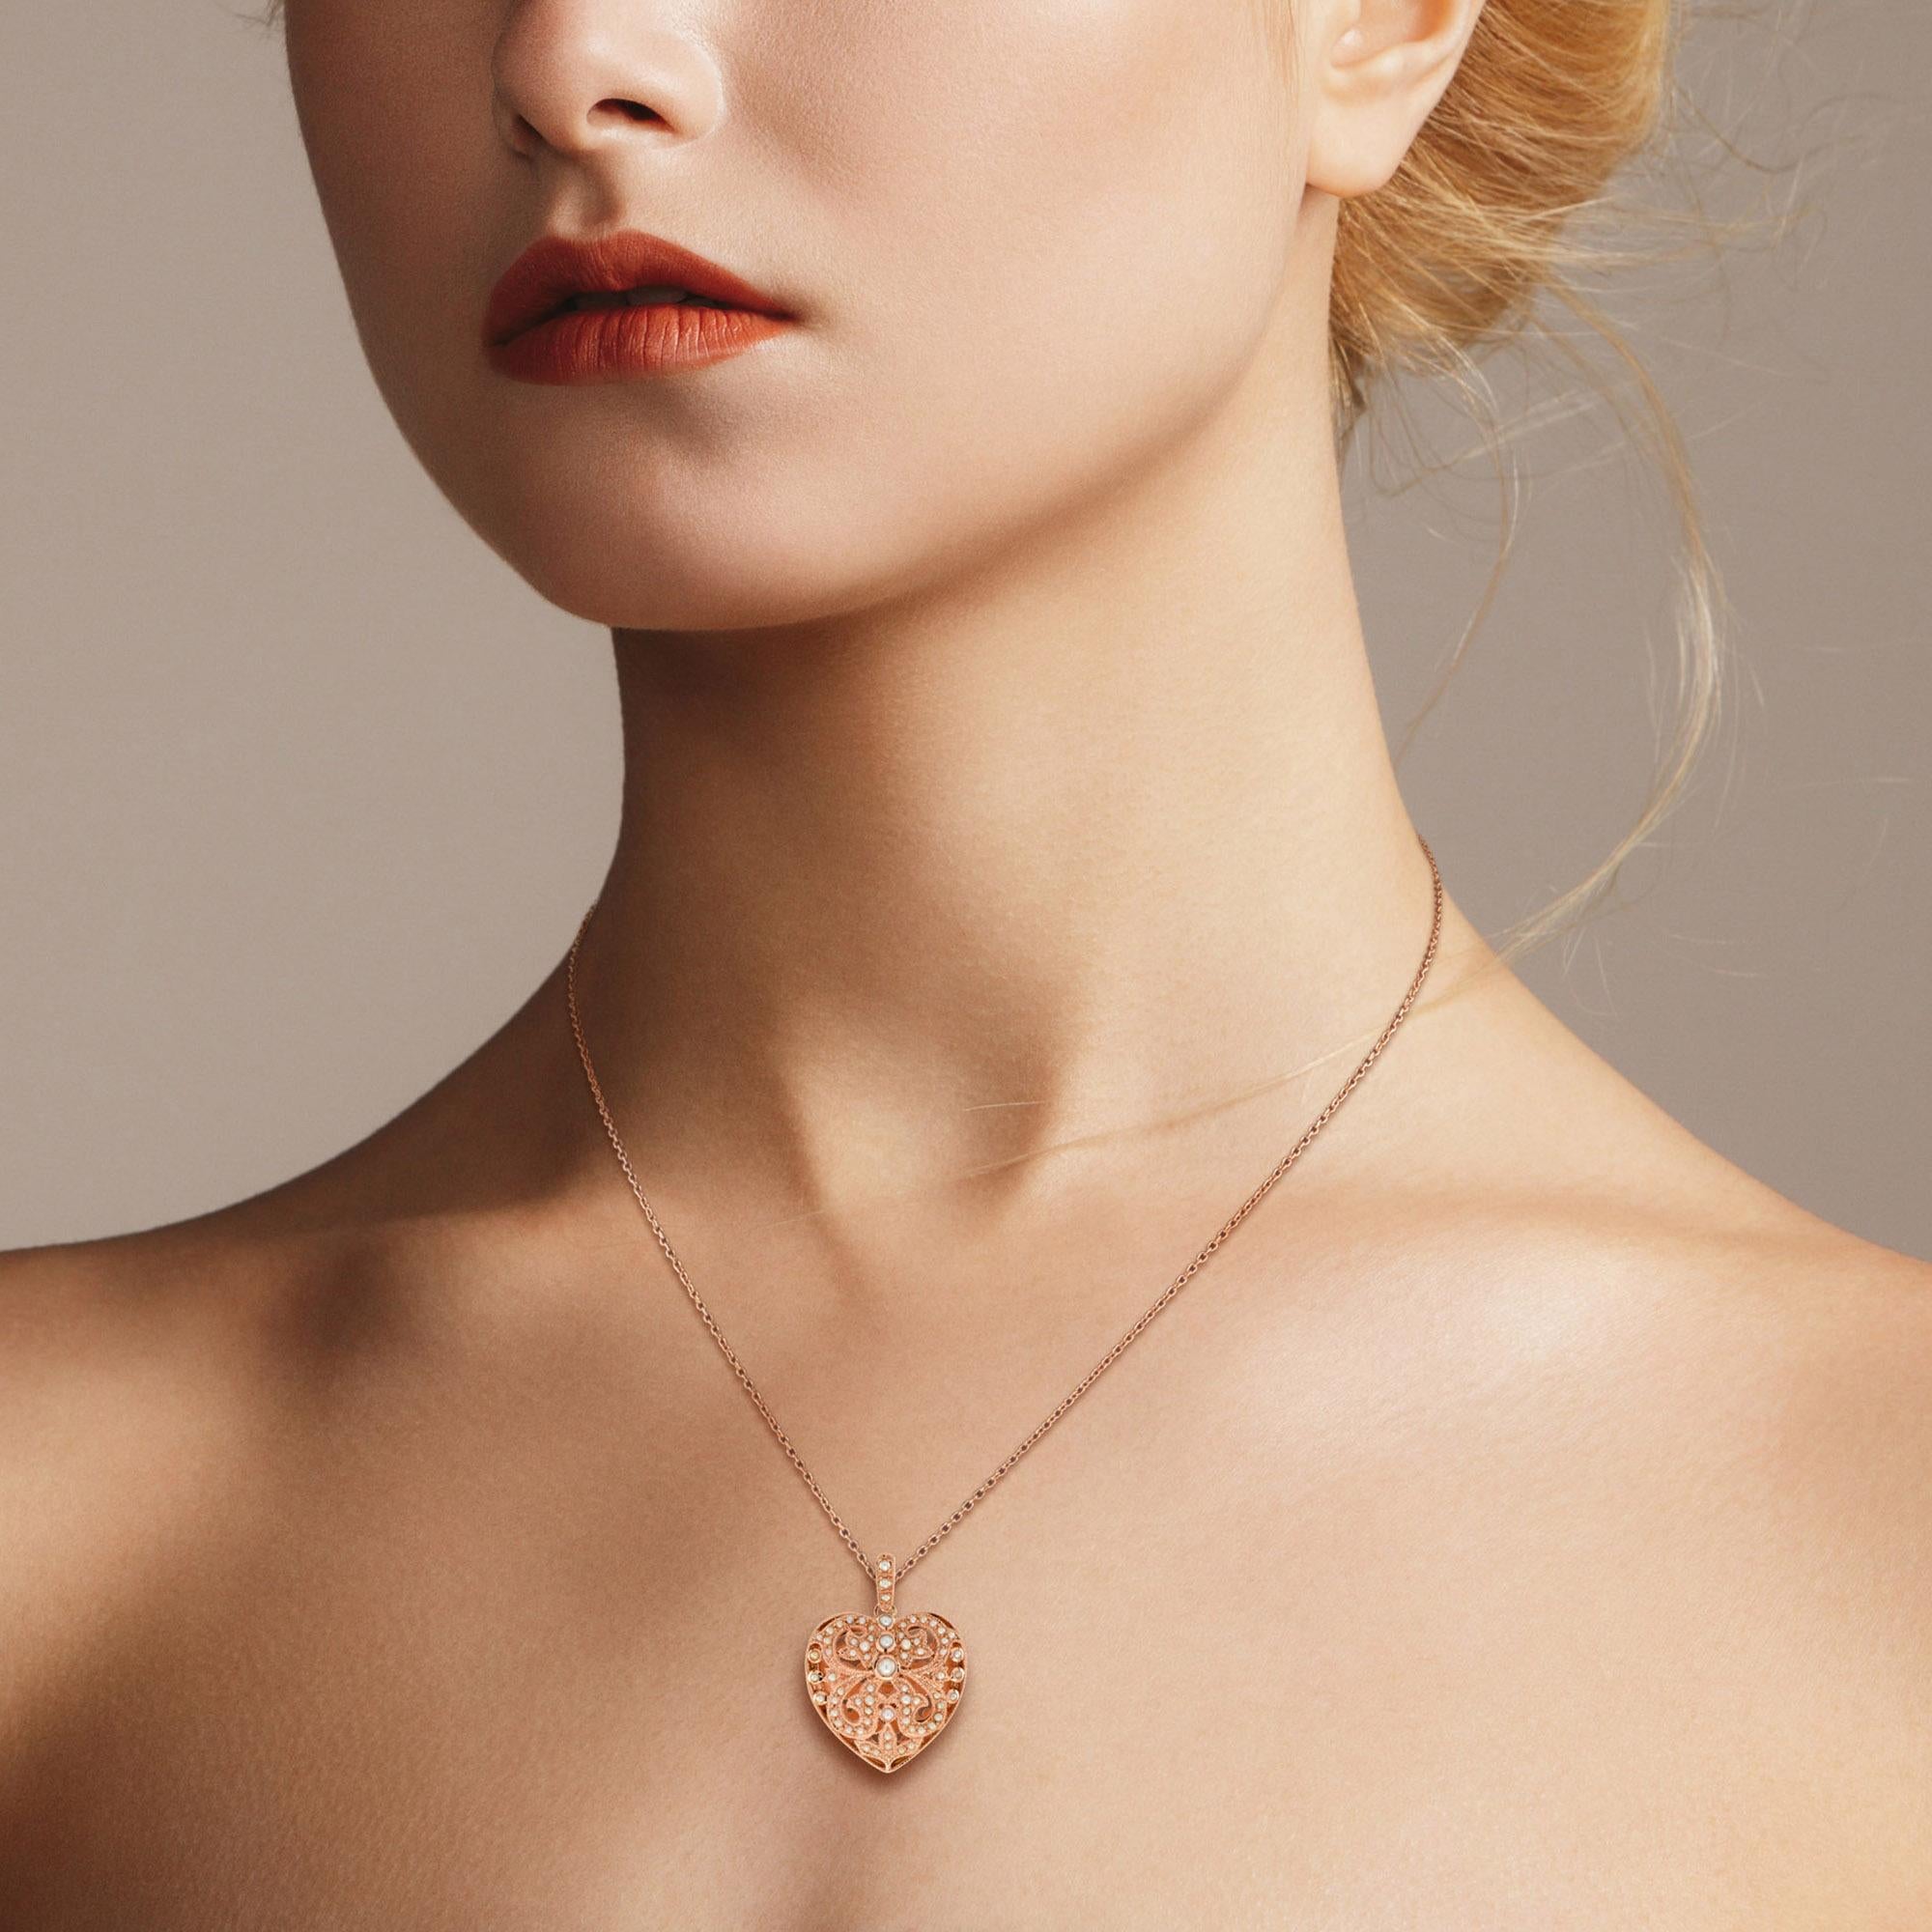 Ce pendentif en forme de cœur en perle de style vintage est si mignon. Le cœur en filigrane représente la complexité des émotions et l'élégance des sentiments. Le pendentif est parsemé sur tout l'ovale de 69 perles de rocaille sur une monture en